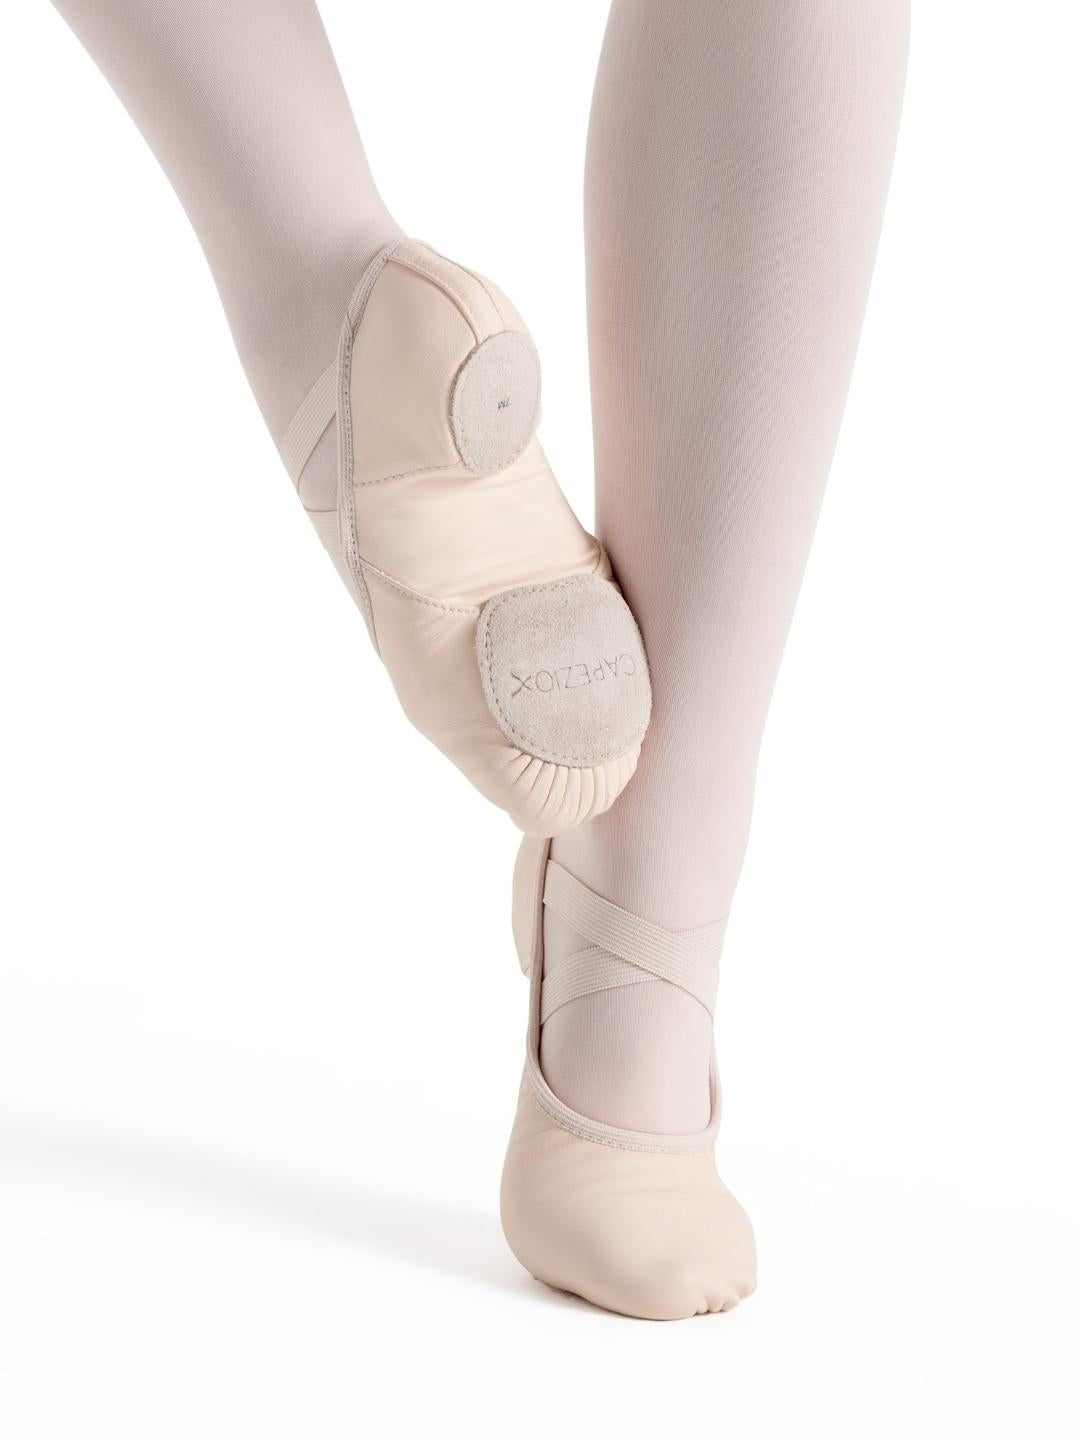 Hanami Leather Ballet Shoe - Light Pink